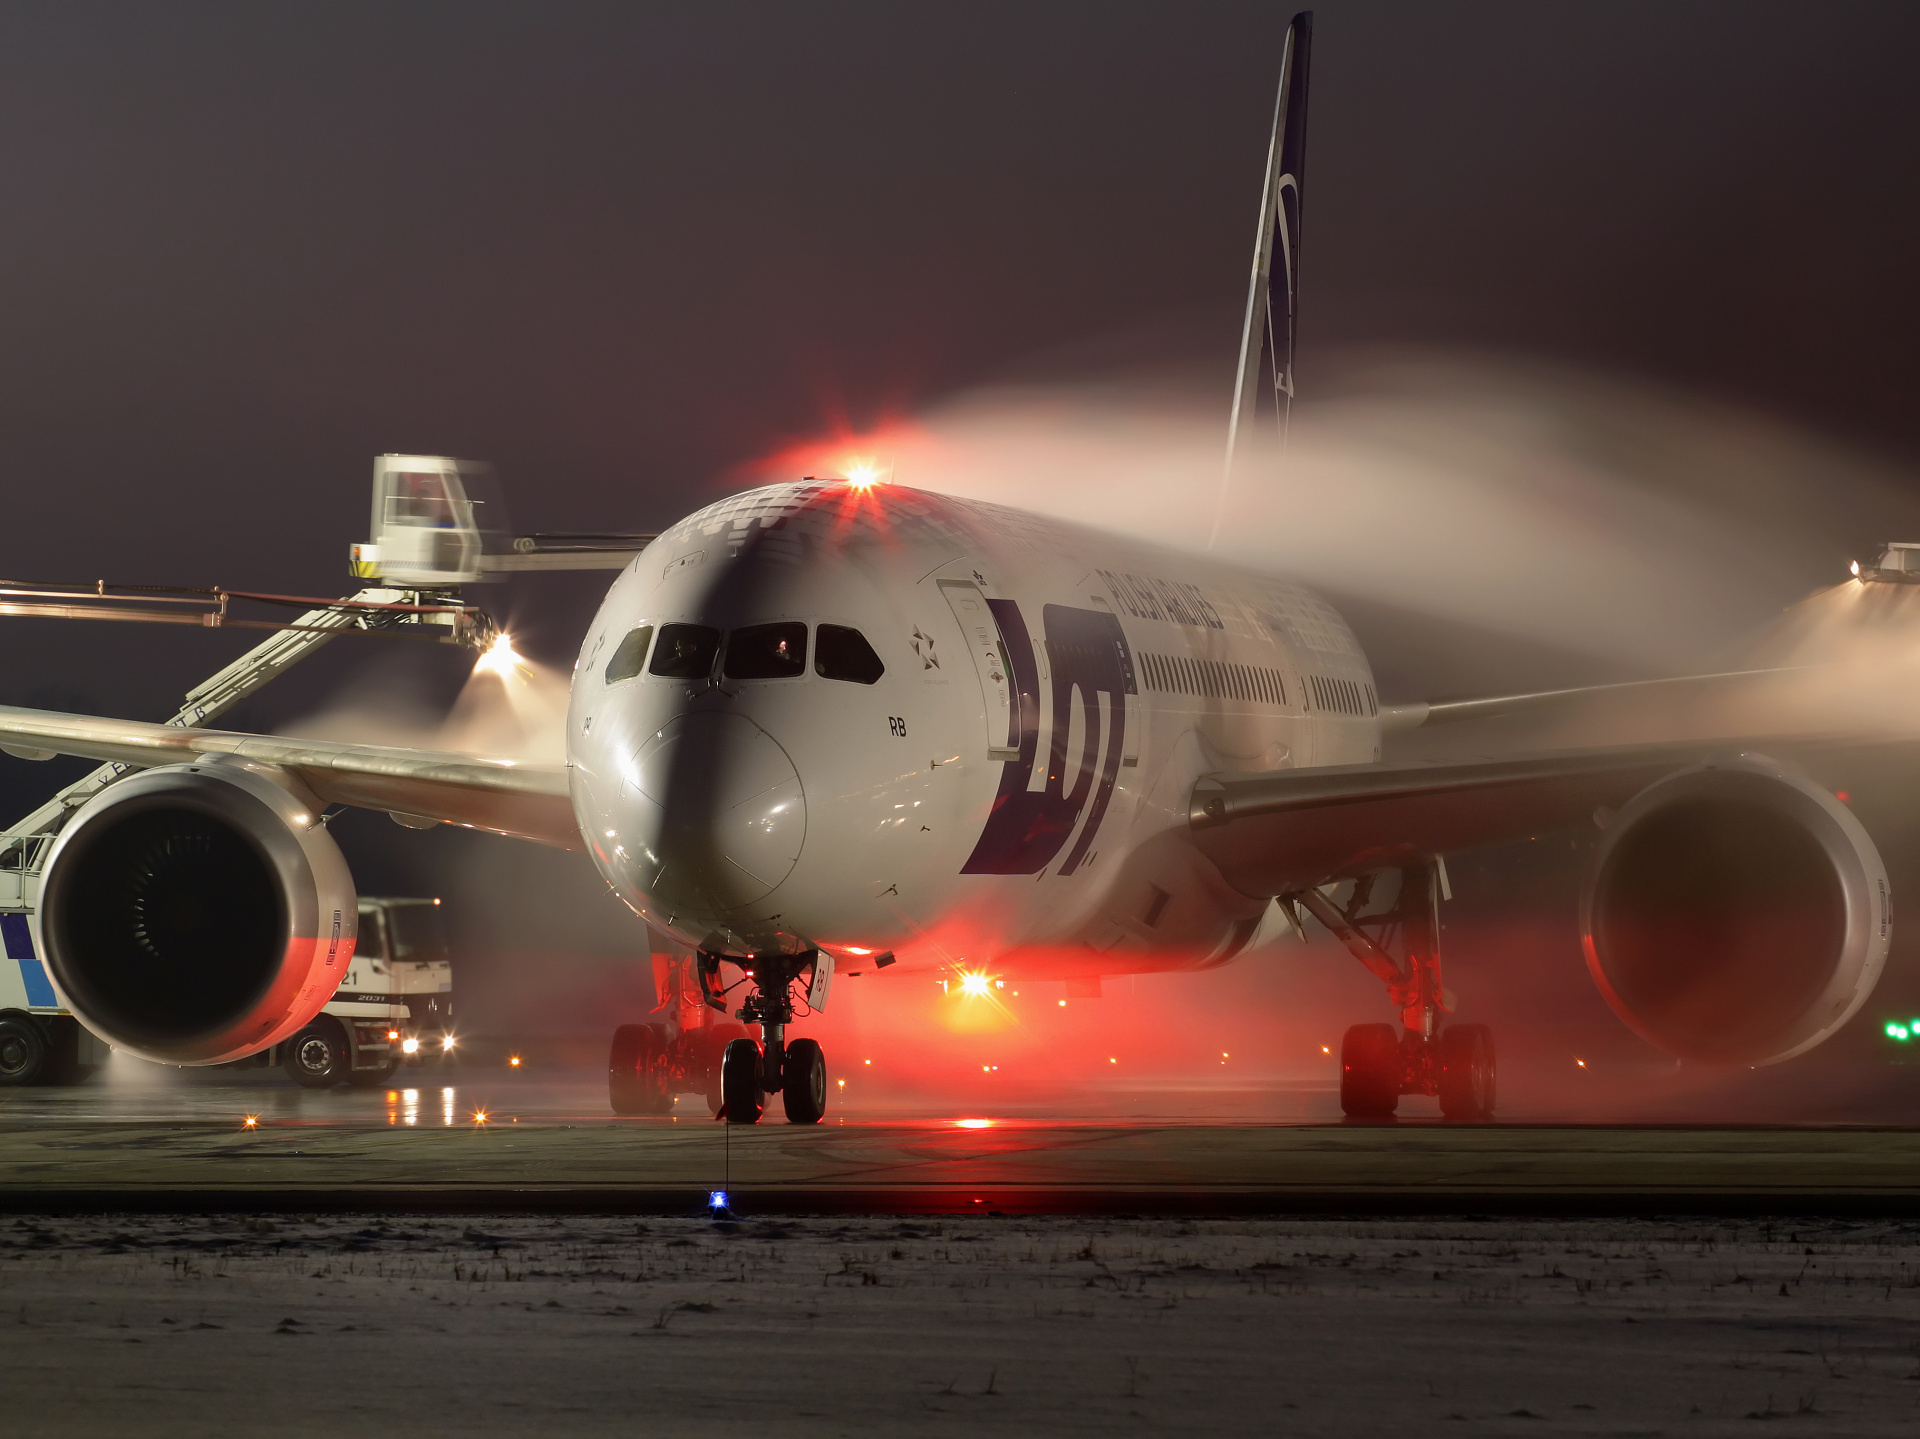 SP-LRB (Samoloty » Spotting na EPWA » Boeing 787-8 Dreamliner » Polskie Linie Lotnicze LOT)